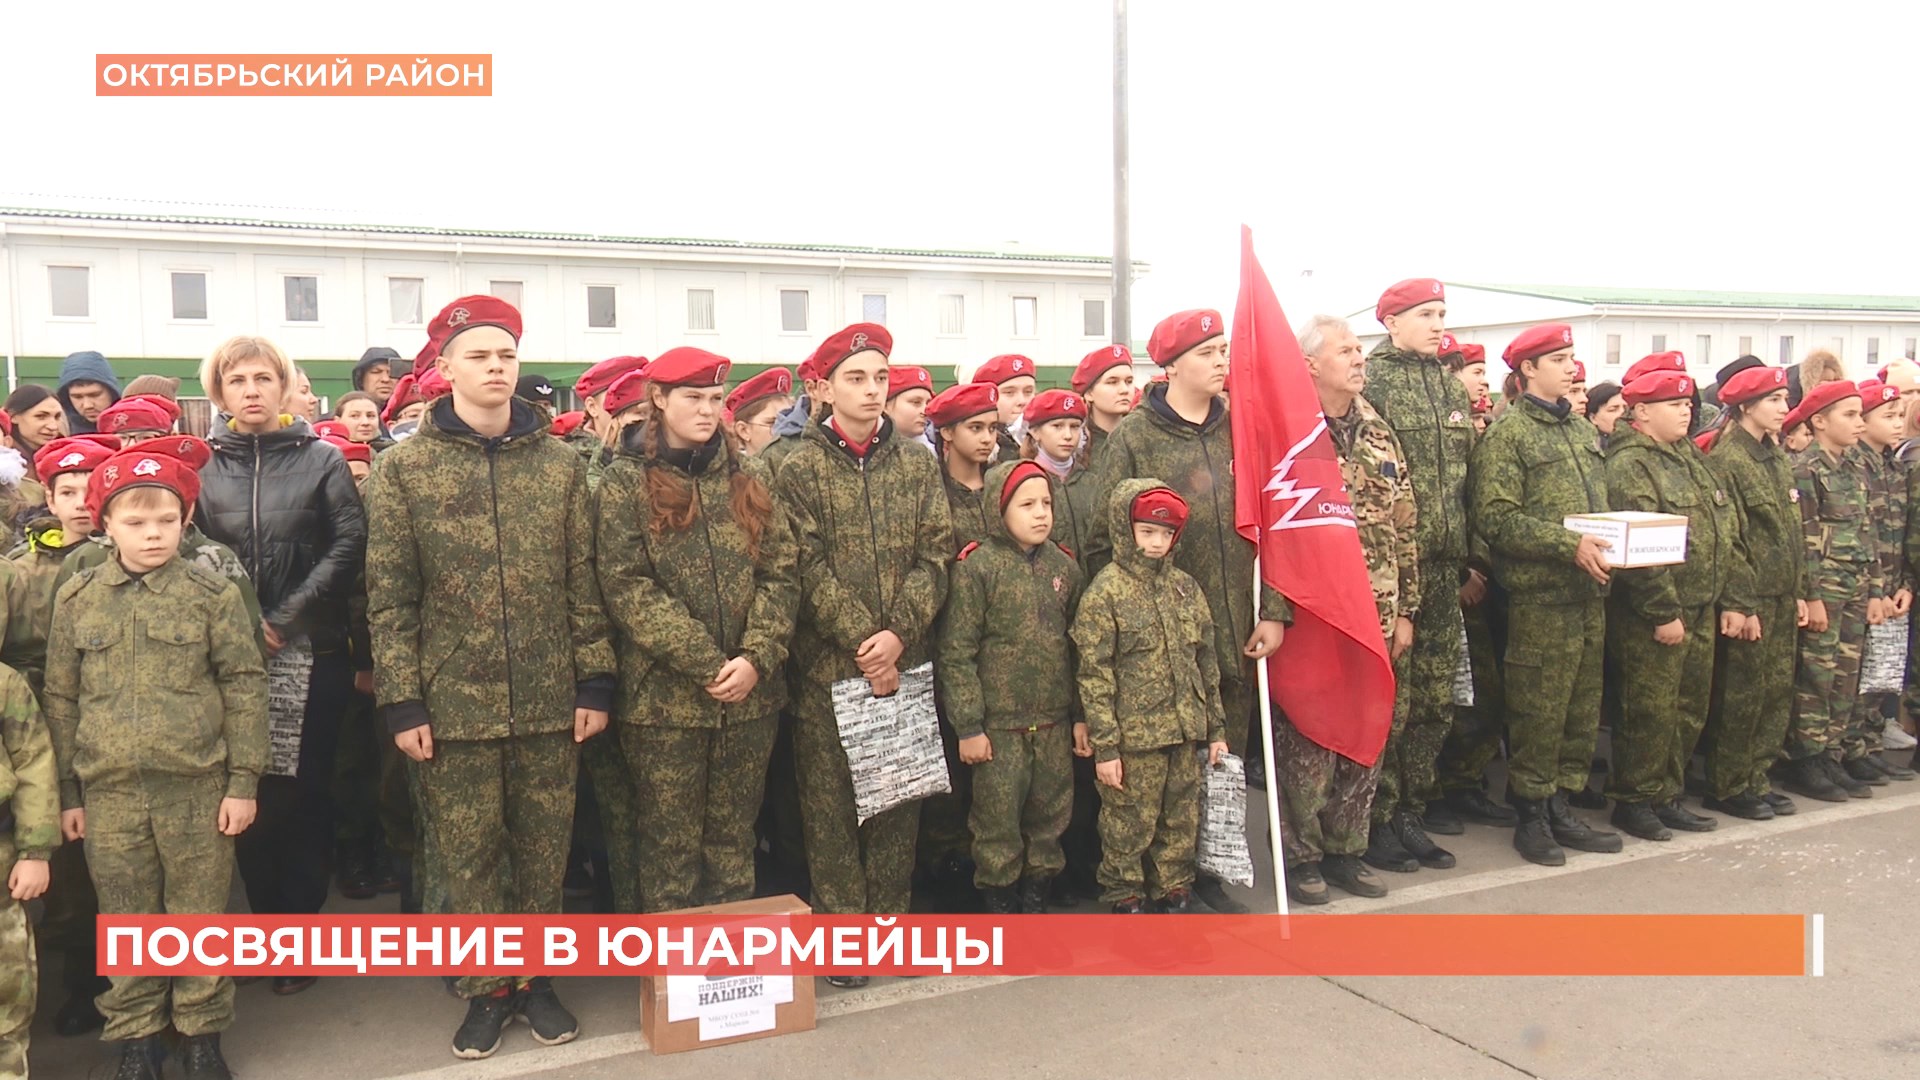 611 мальчиков и девочек Октябрьского района вступили сегодня в Юнармию